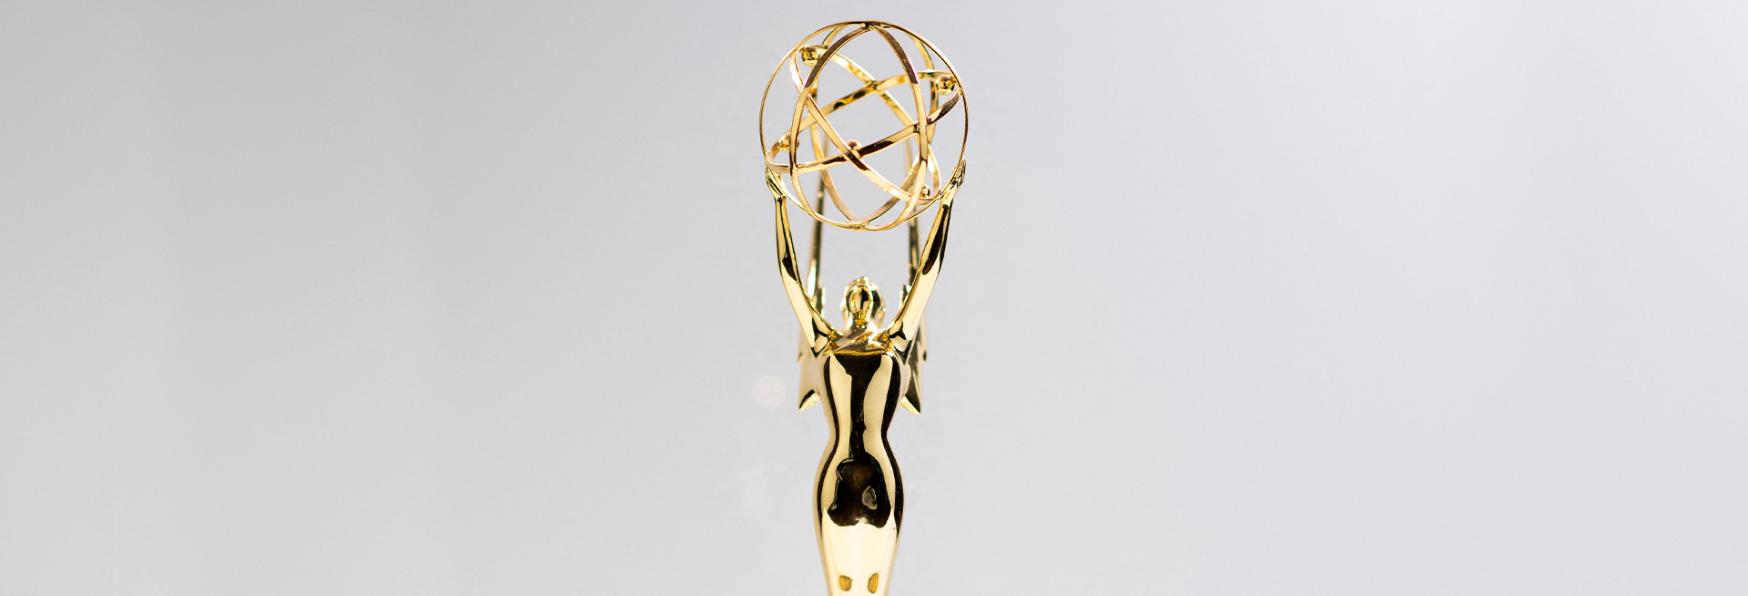 Emmy Awards 2022: è l'anno di HBO. Più Premi di Netflix, Prime Video, Apple TV+ e Hulu messi insieme!